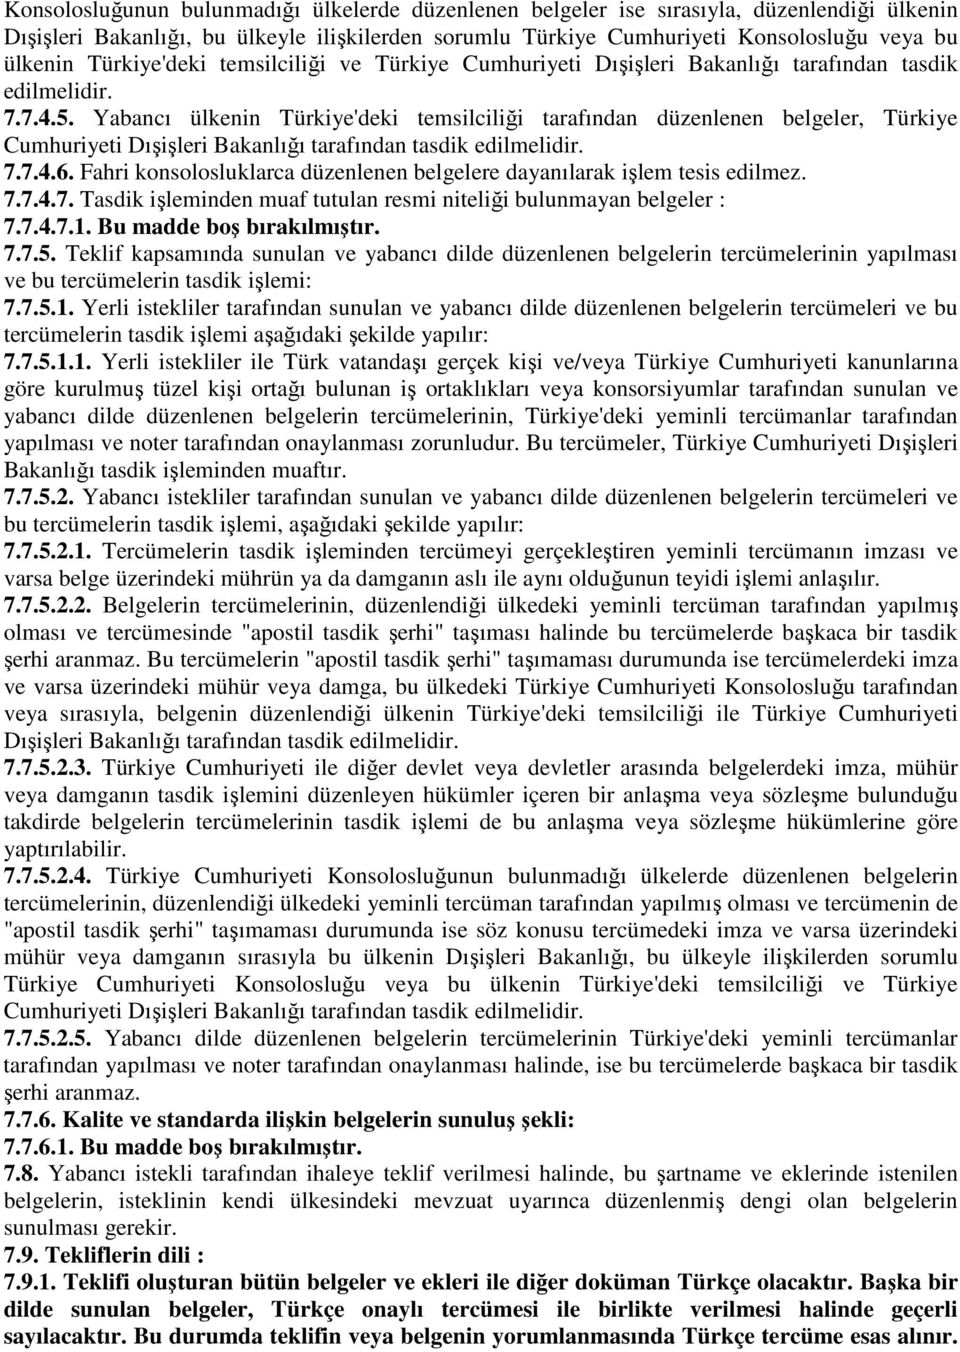 Yabancı ülkenin Türkiye'deki temsilciliği tarafından düzenlenen belgeler, Türkiye Cumhuriyeti Dışişleri Bakanlığı tarafından tasdik edilmelidir. 7.7.4.6.